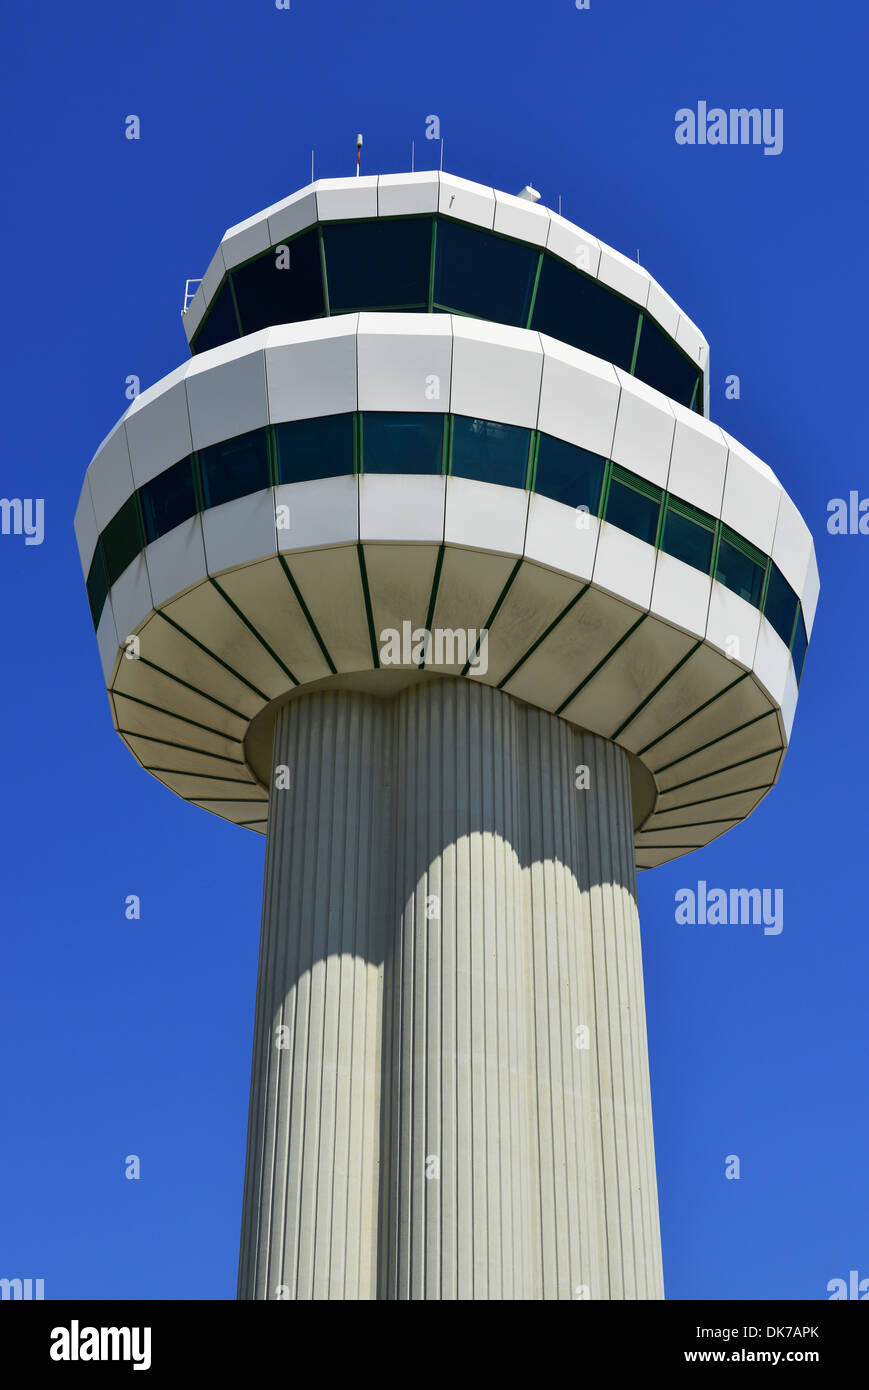 Tour de contrôle tour de contrôle de la circulation aérienne à l'aéroport de Gatwick, Londres, Angleterre, Royaume-Uni Banque D'Images